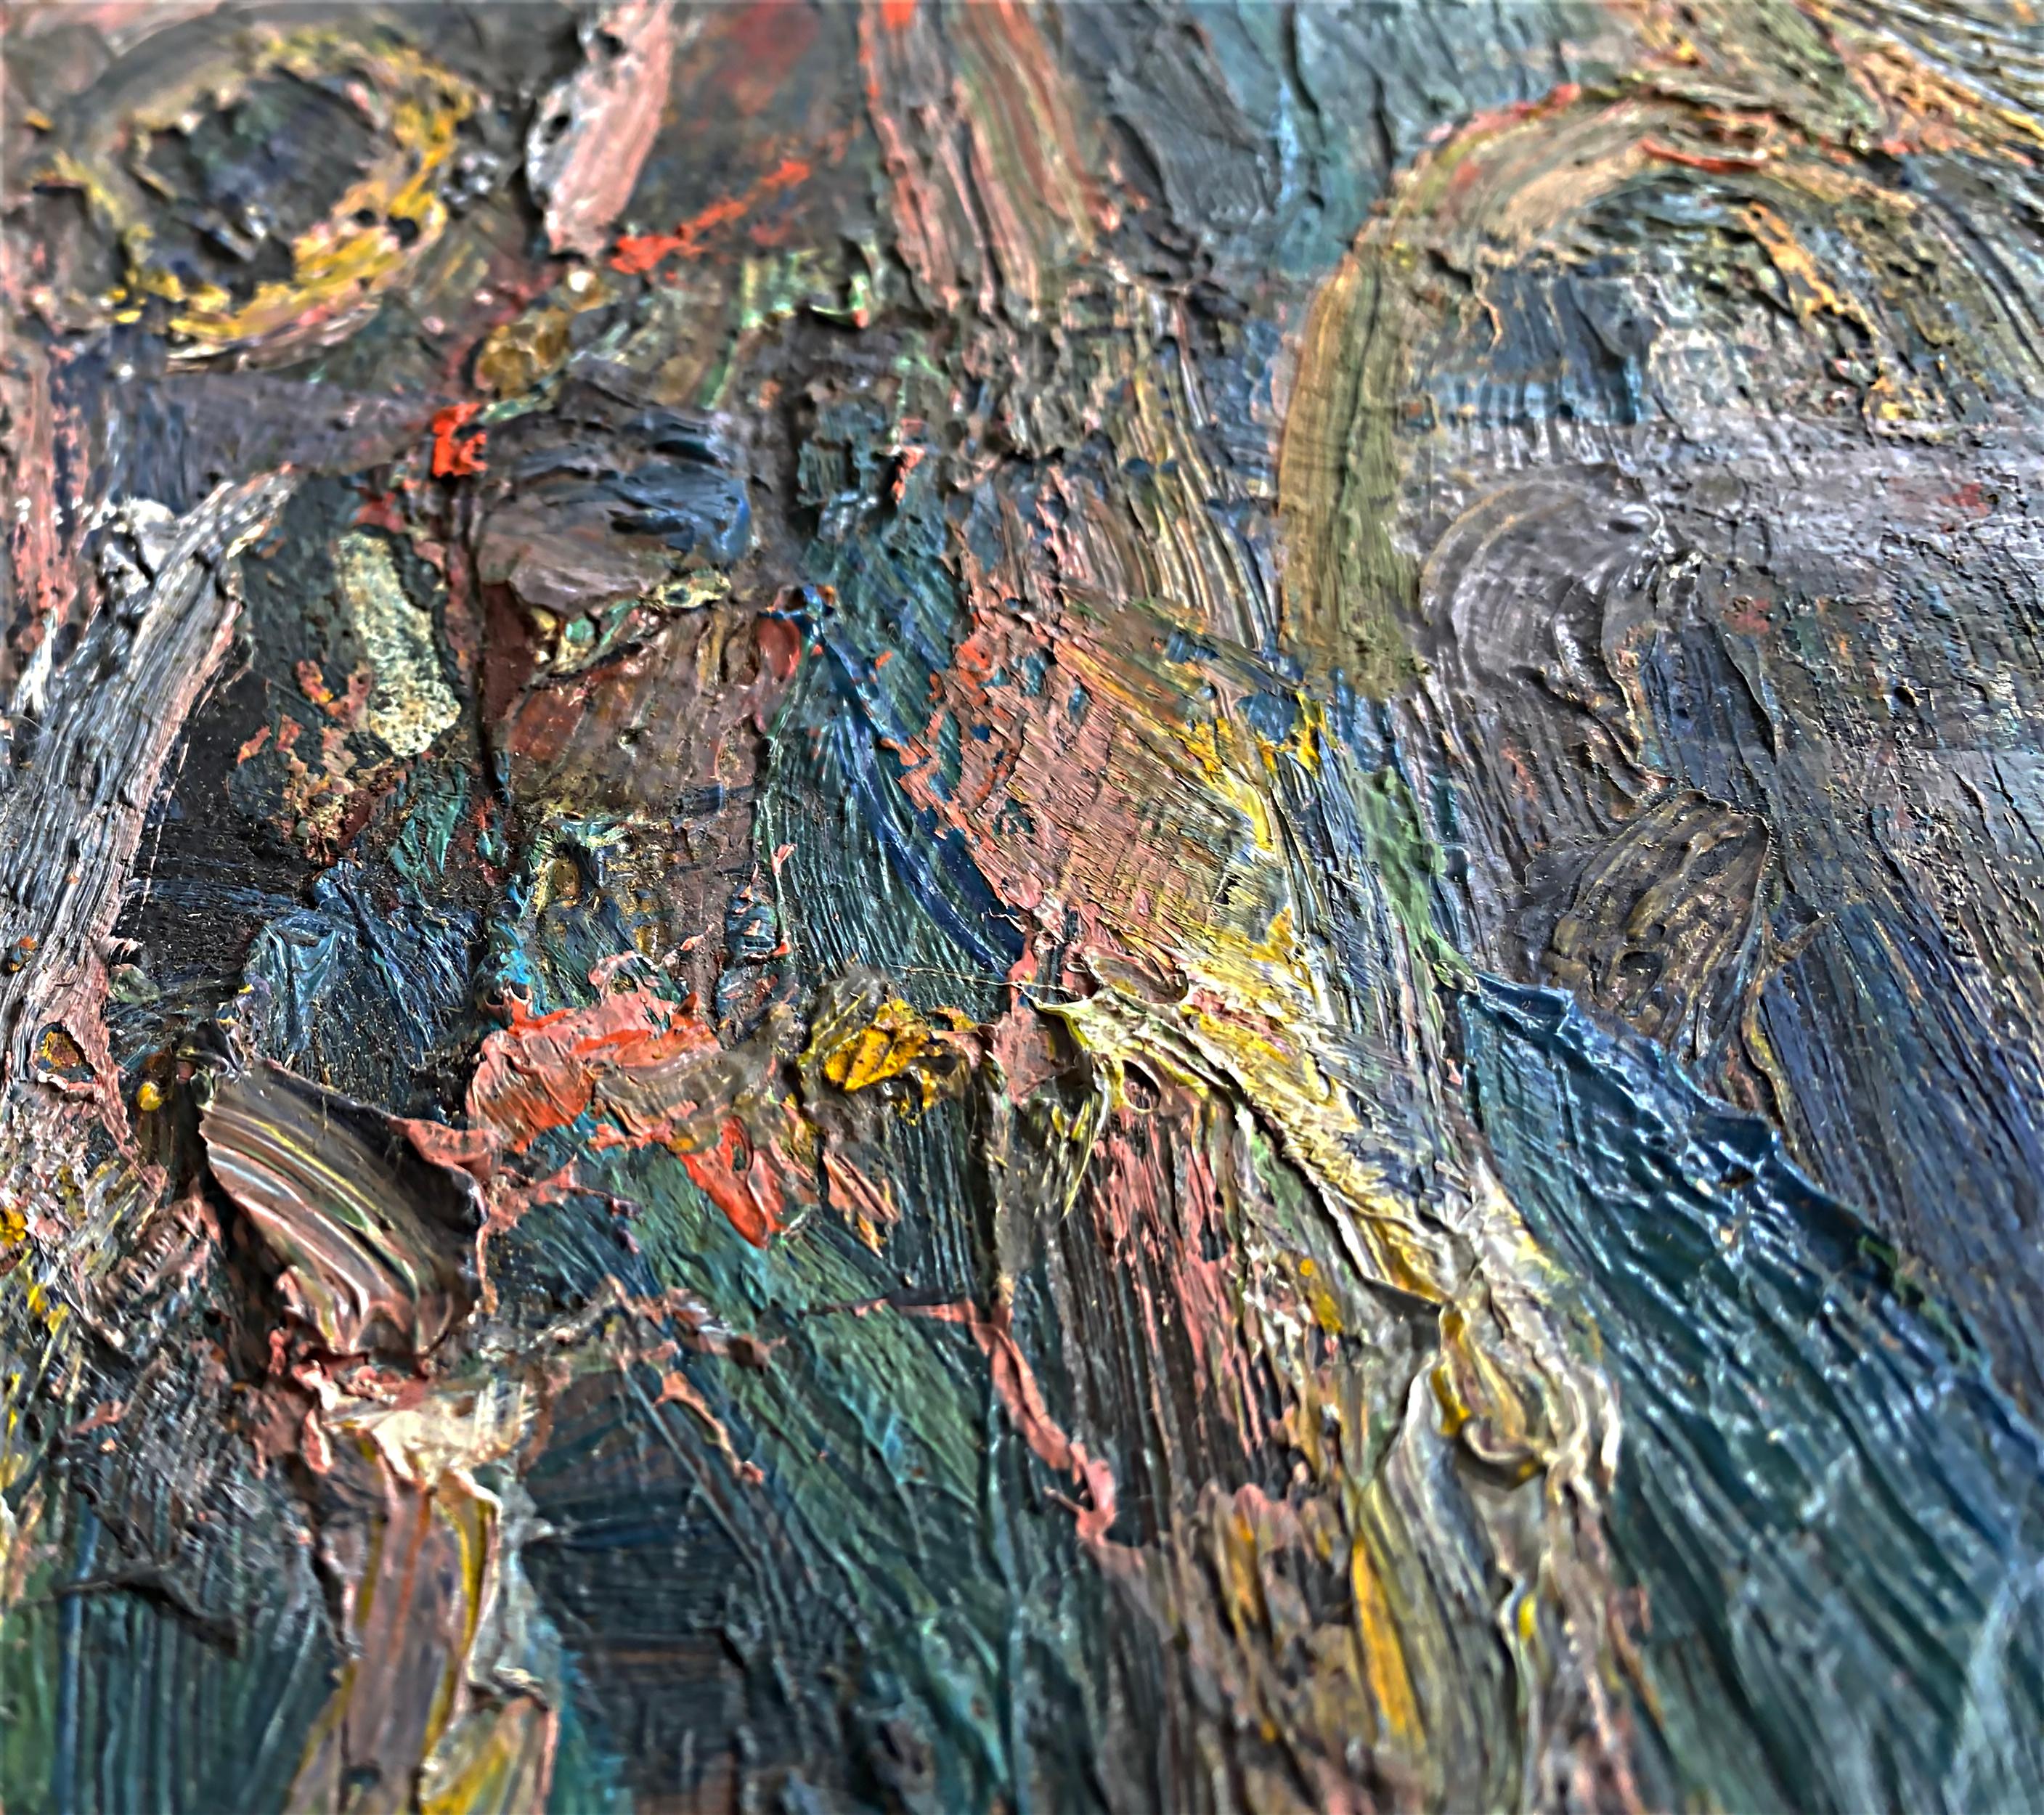 Vintage Warren Fischer figurative abstrakte Ölgemälde.
Zum Verkauf angeboten wird ein figuratives abstraktes Ölgemälde auf Leinwand von dem amerikanischen Künstler Warren Fischer (1943-2001). Das Gemälde ist Teil des Nachlasses des Künstlers.